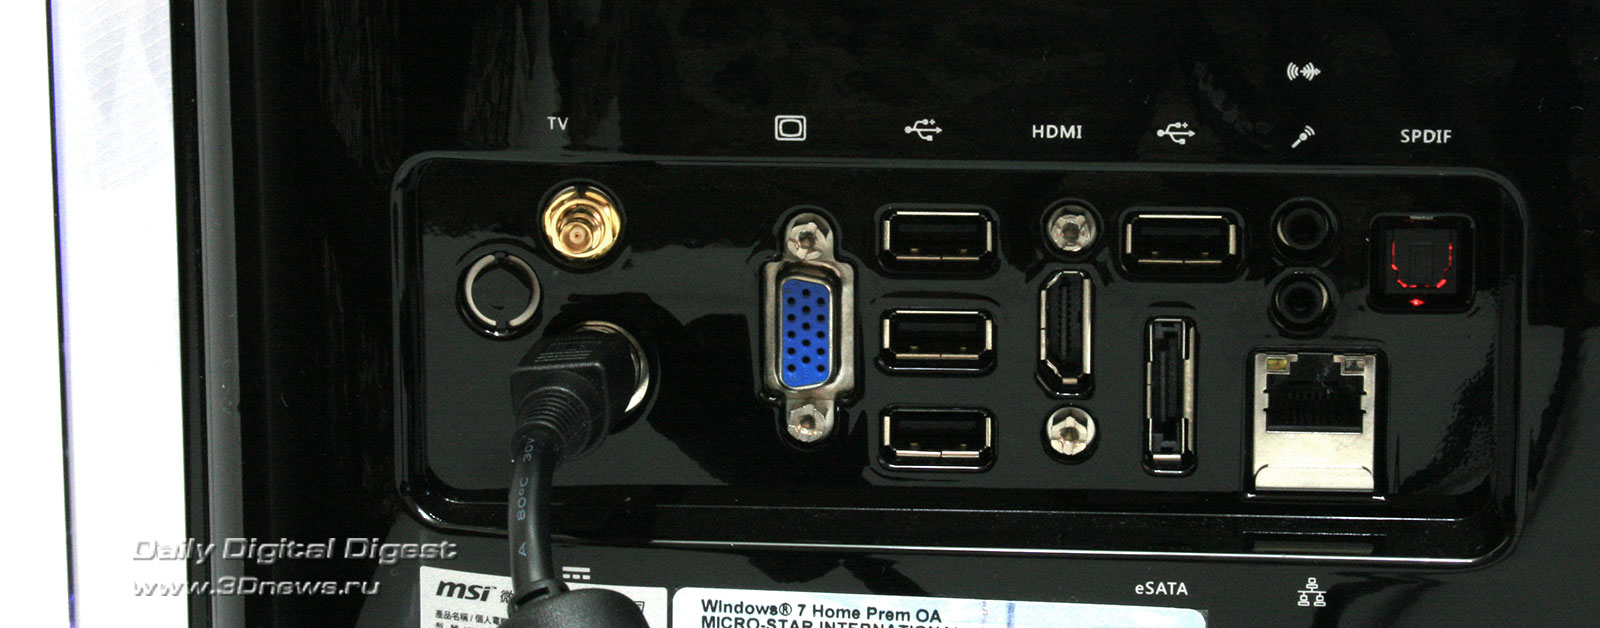 Разъемы моноблока. Sz65 видеовыход. Композитный видеовыход sz65 для внешнего рекордера.. Моноблок Lenovo HDMI выход. Разъём sz65.